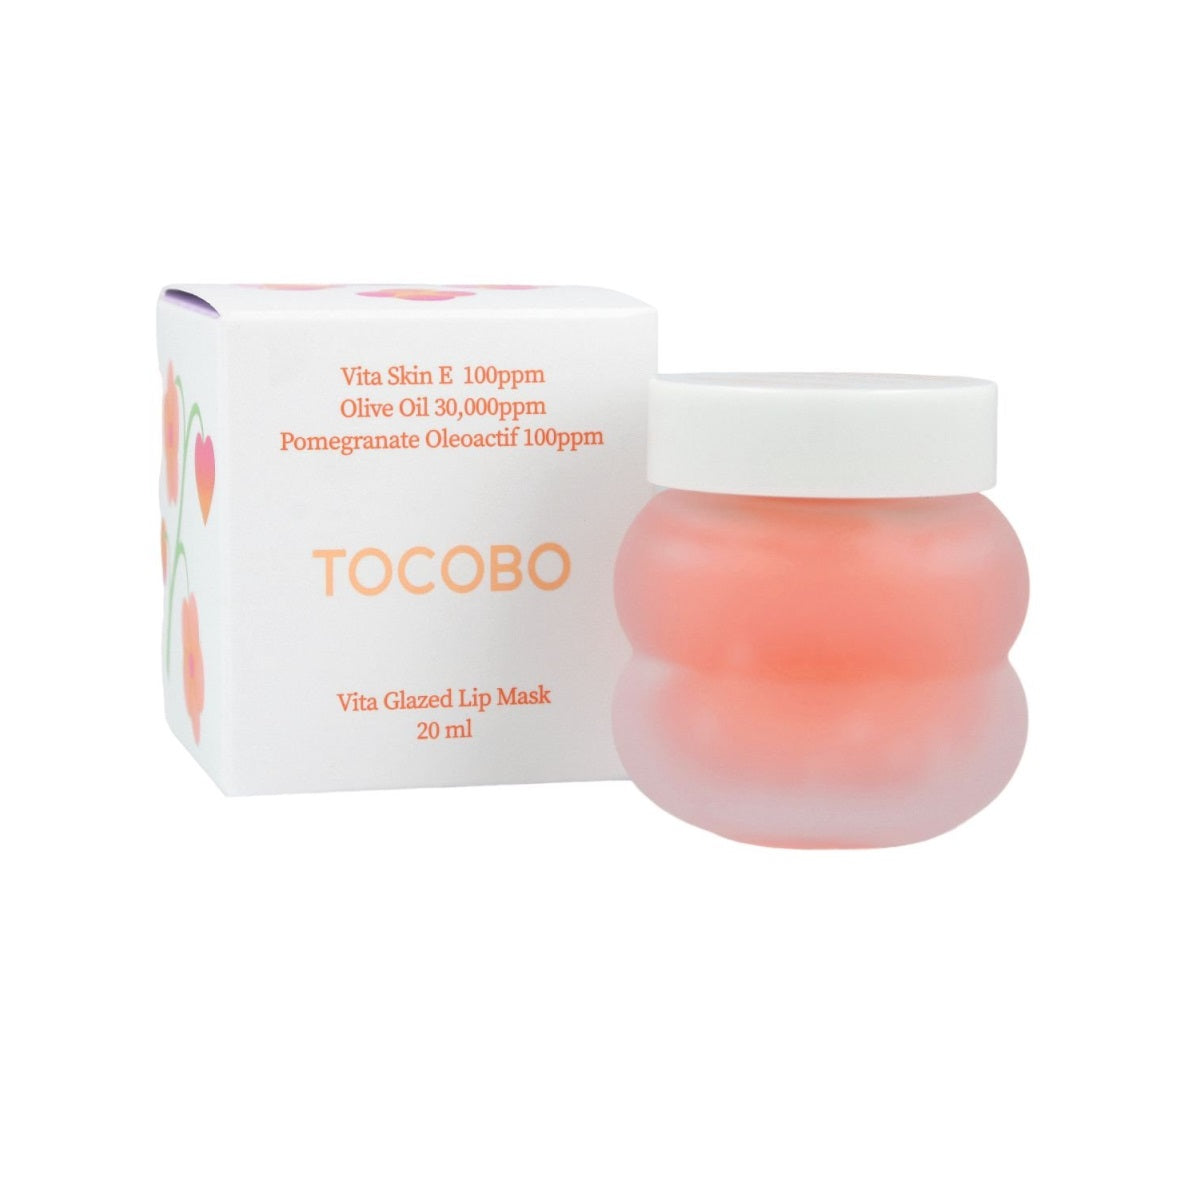 TOCOBO Vita Glazed Lip Mask 20ml